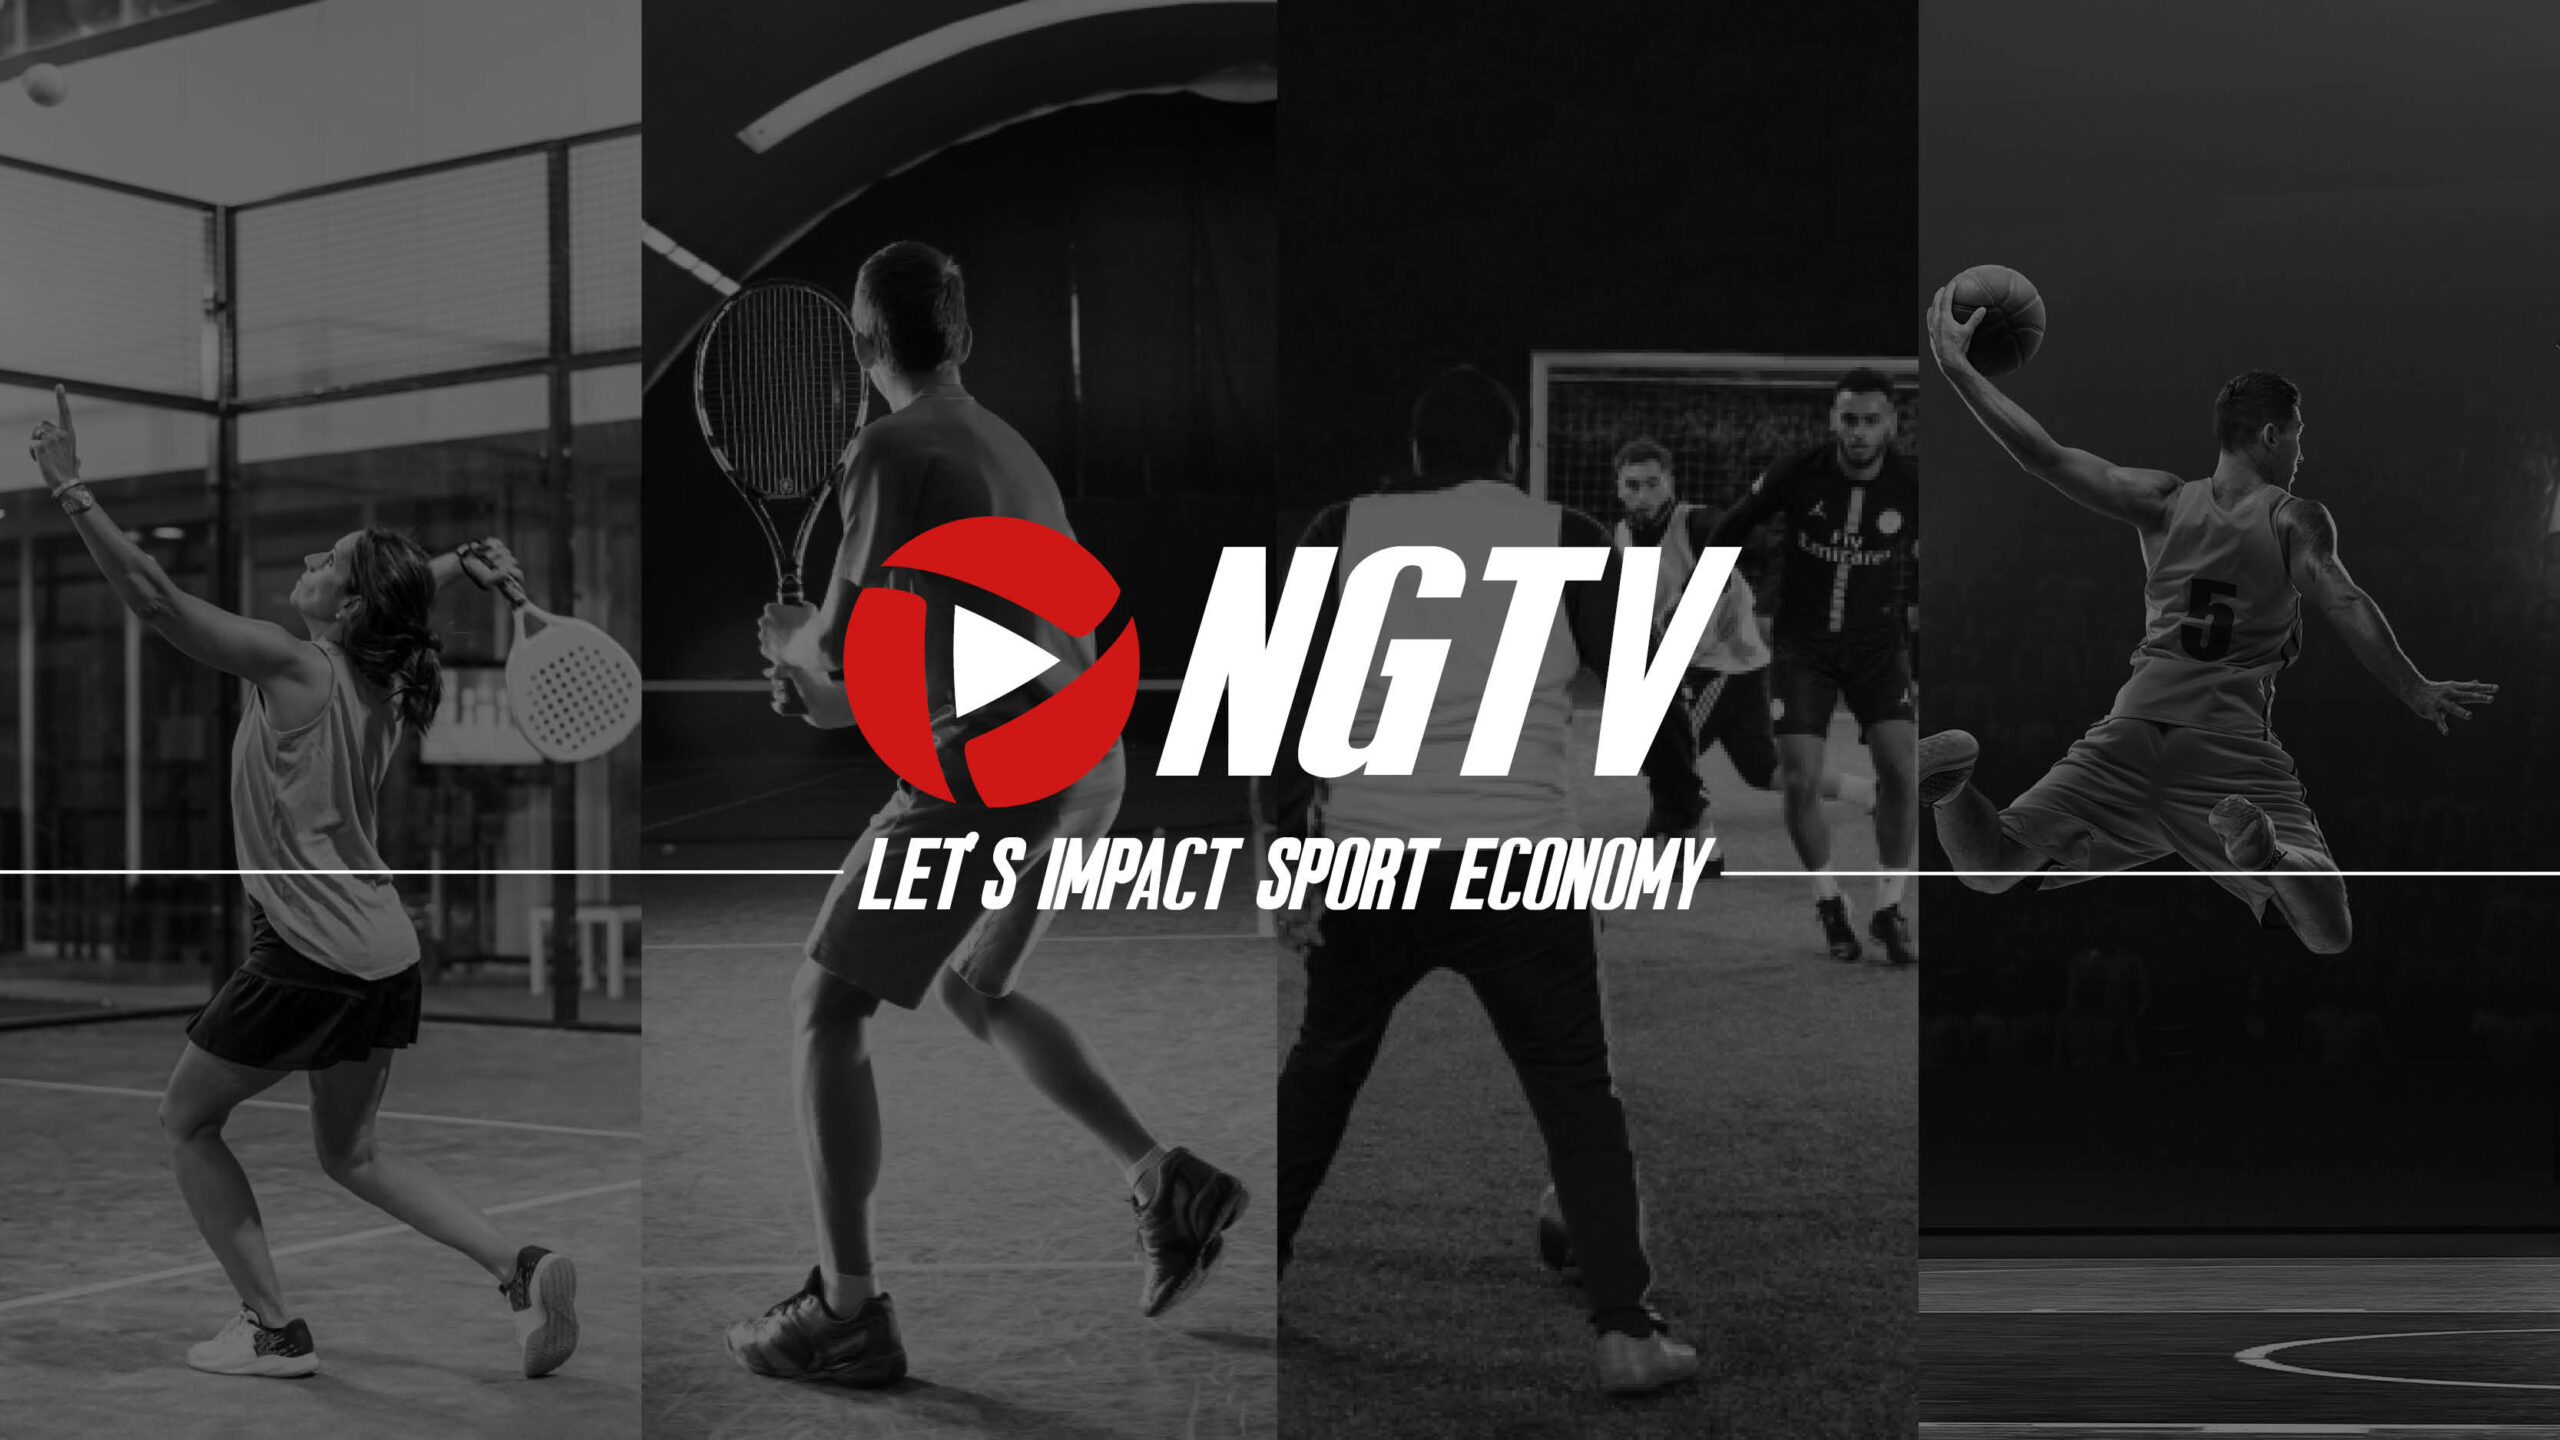 L'obiettivo di NGTV: avere un impatto sull'economia dello sport!